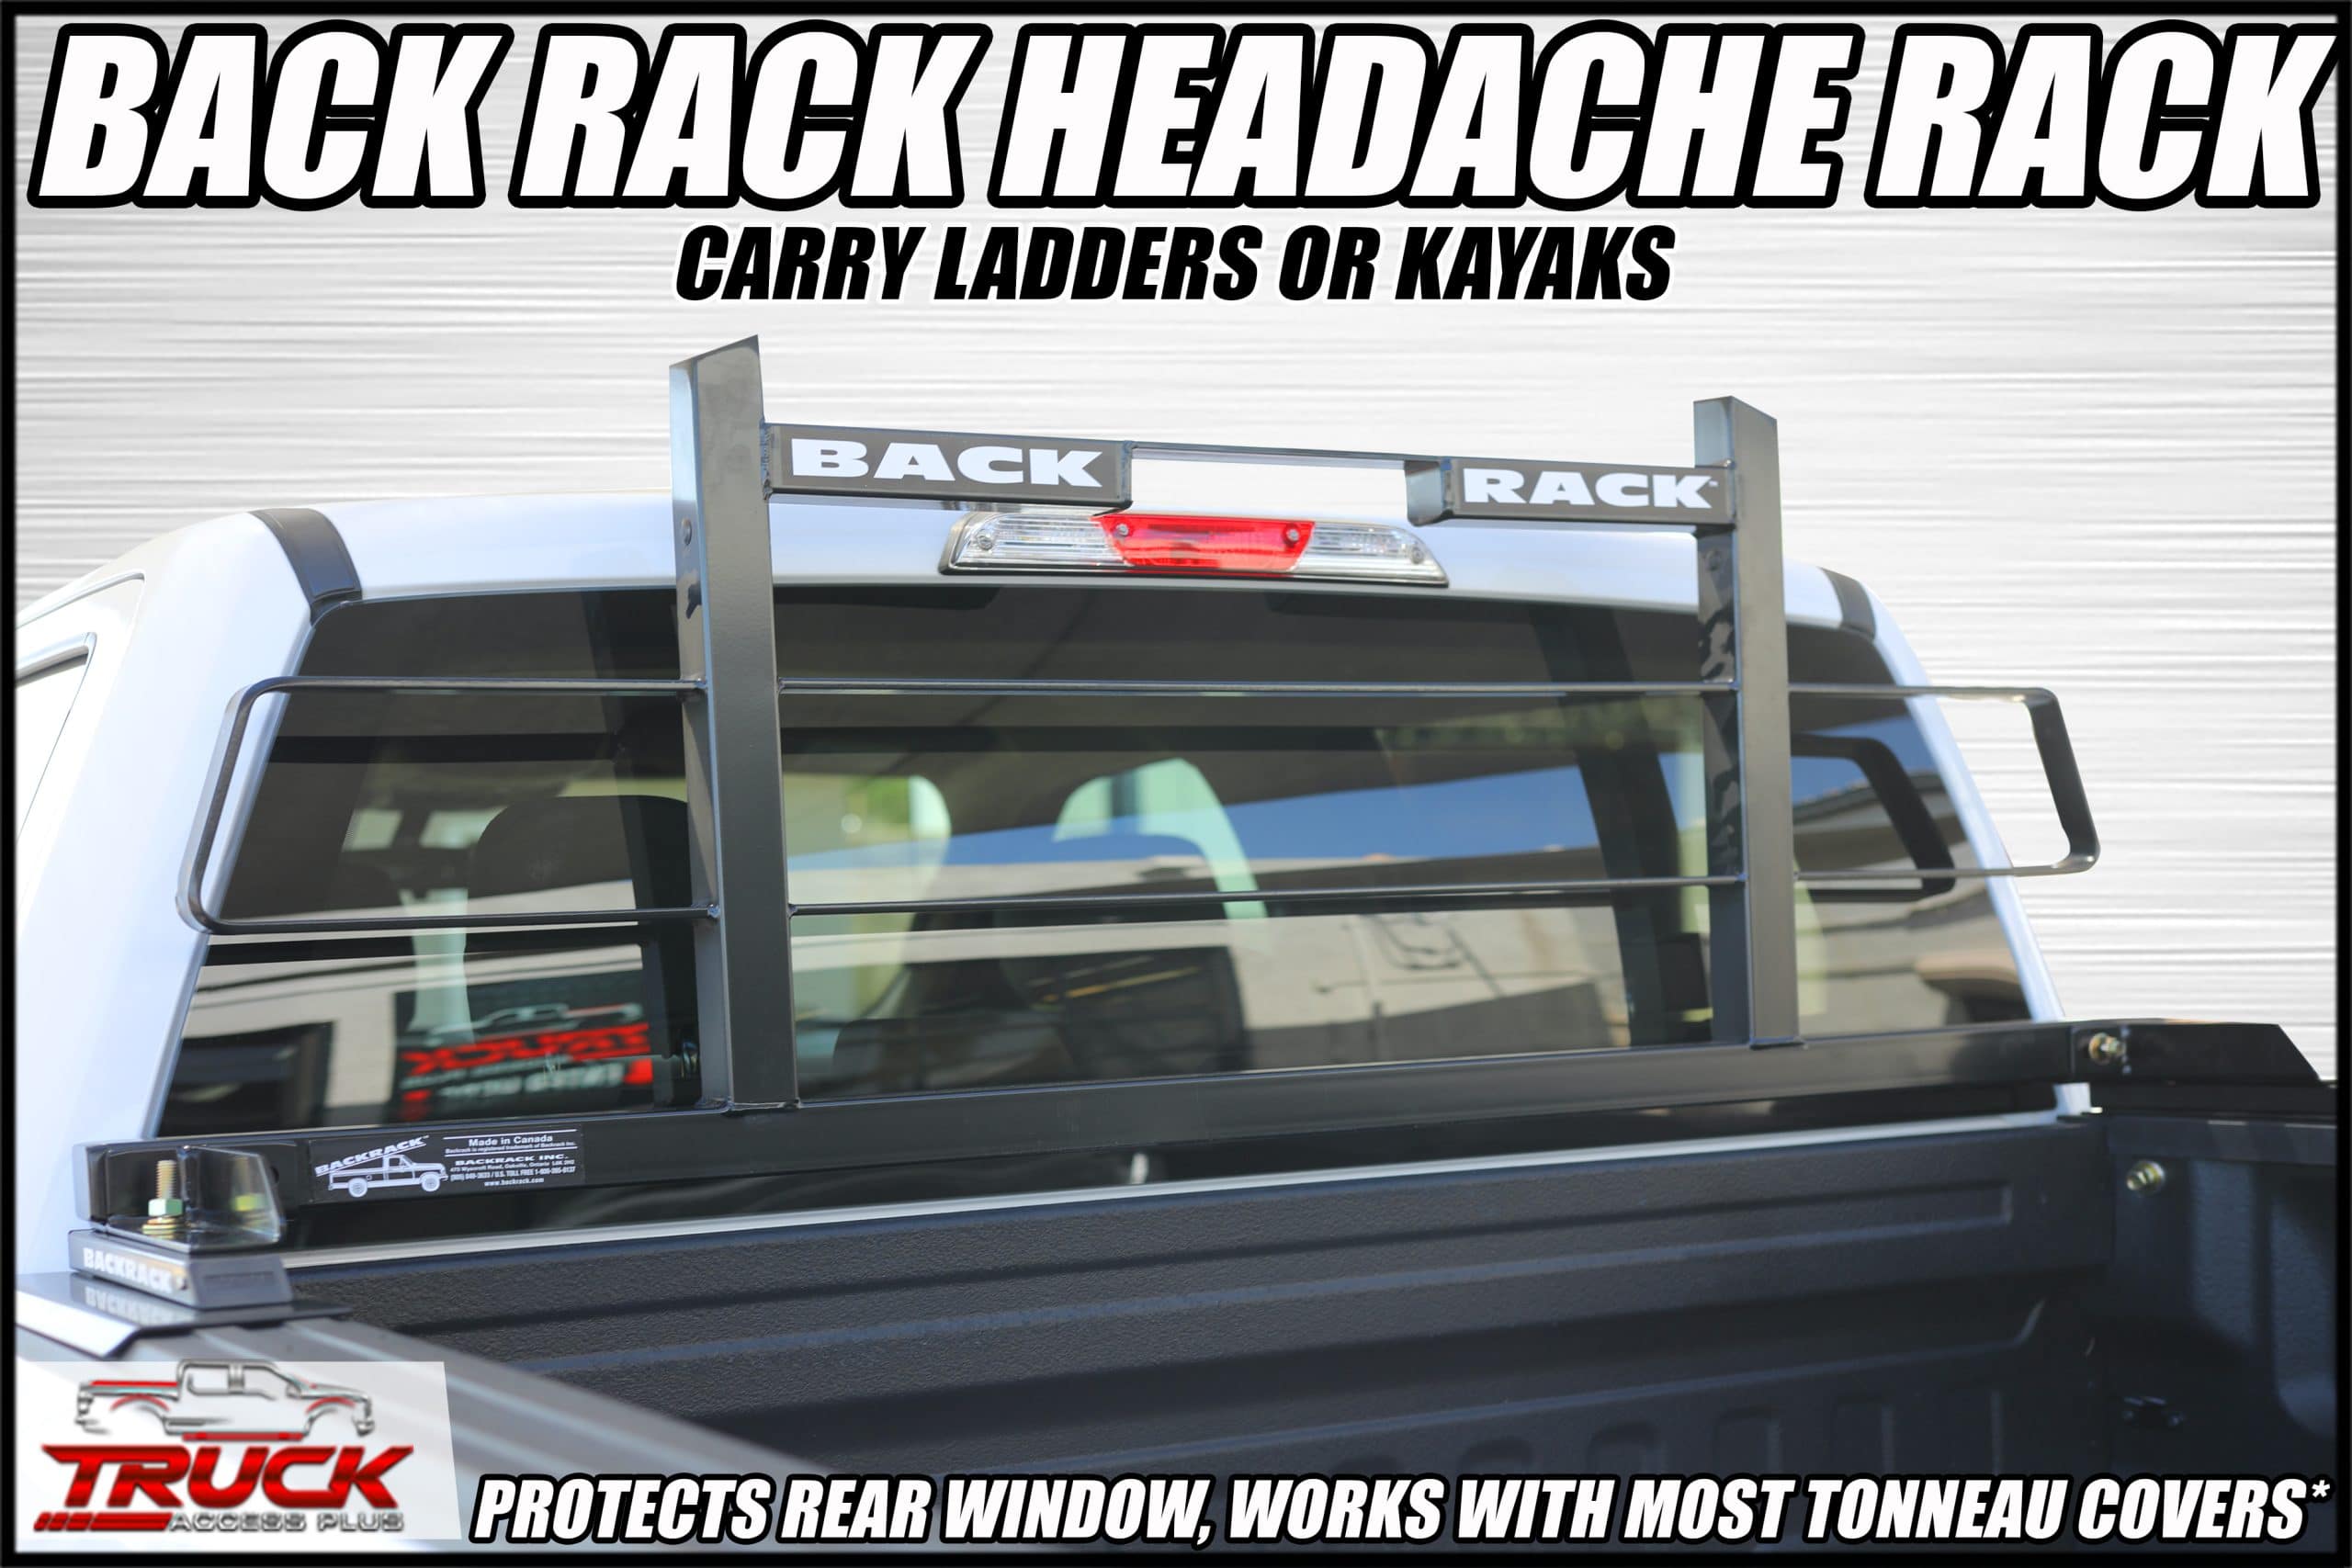 backrack headache rack system trucks az